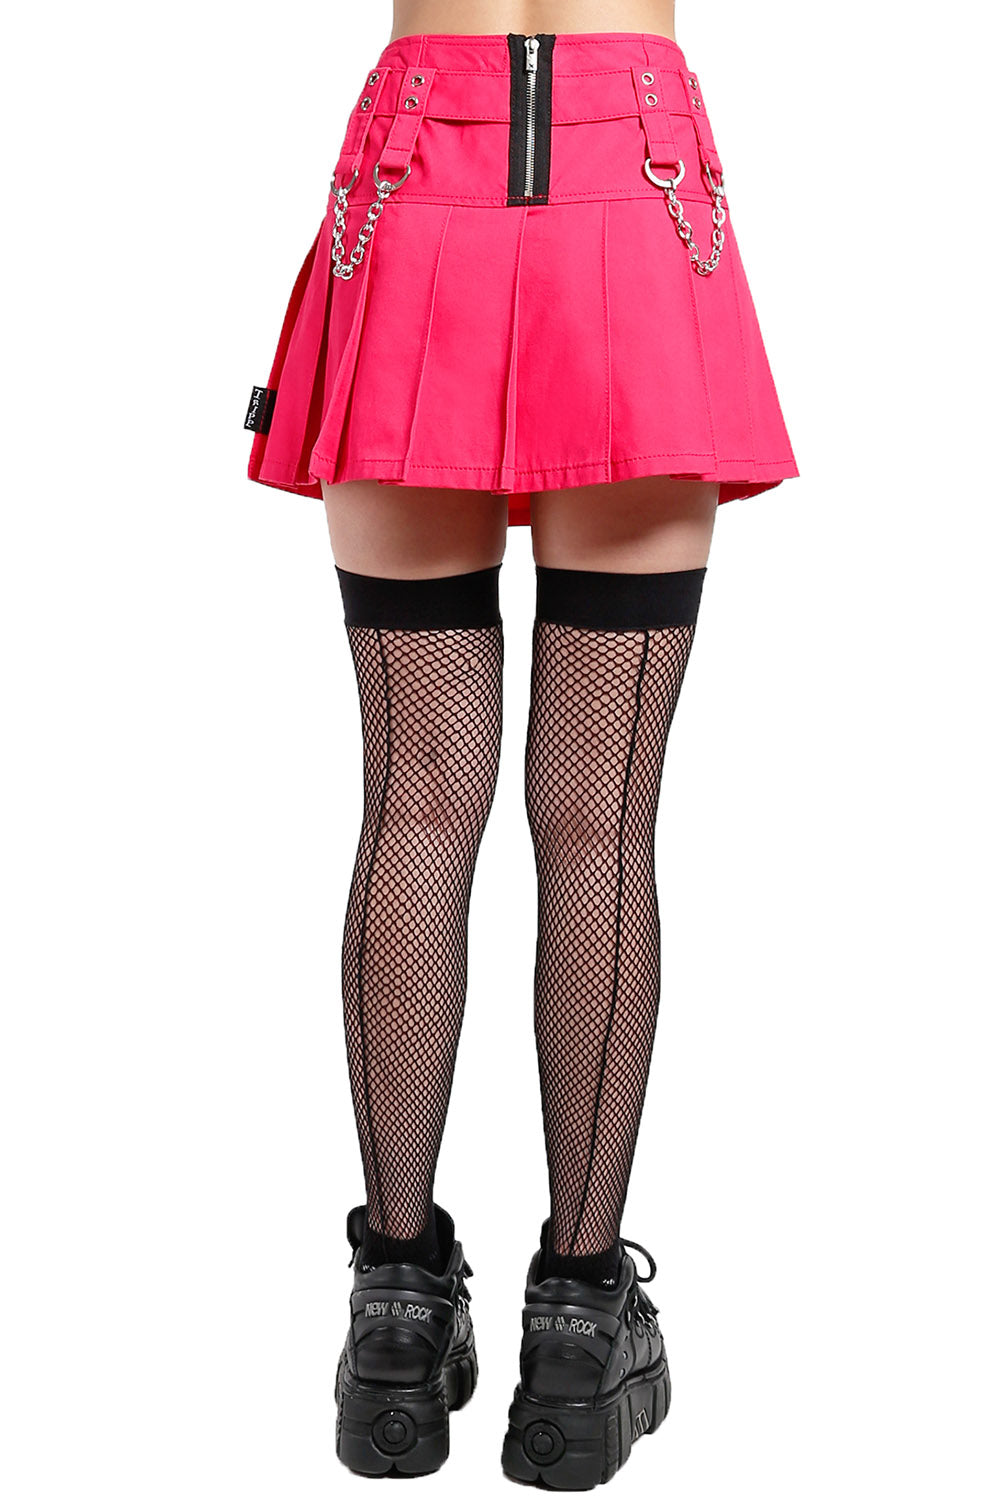 Tripp Studded Chain Skirt [Pink]